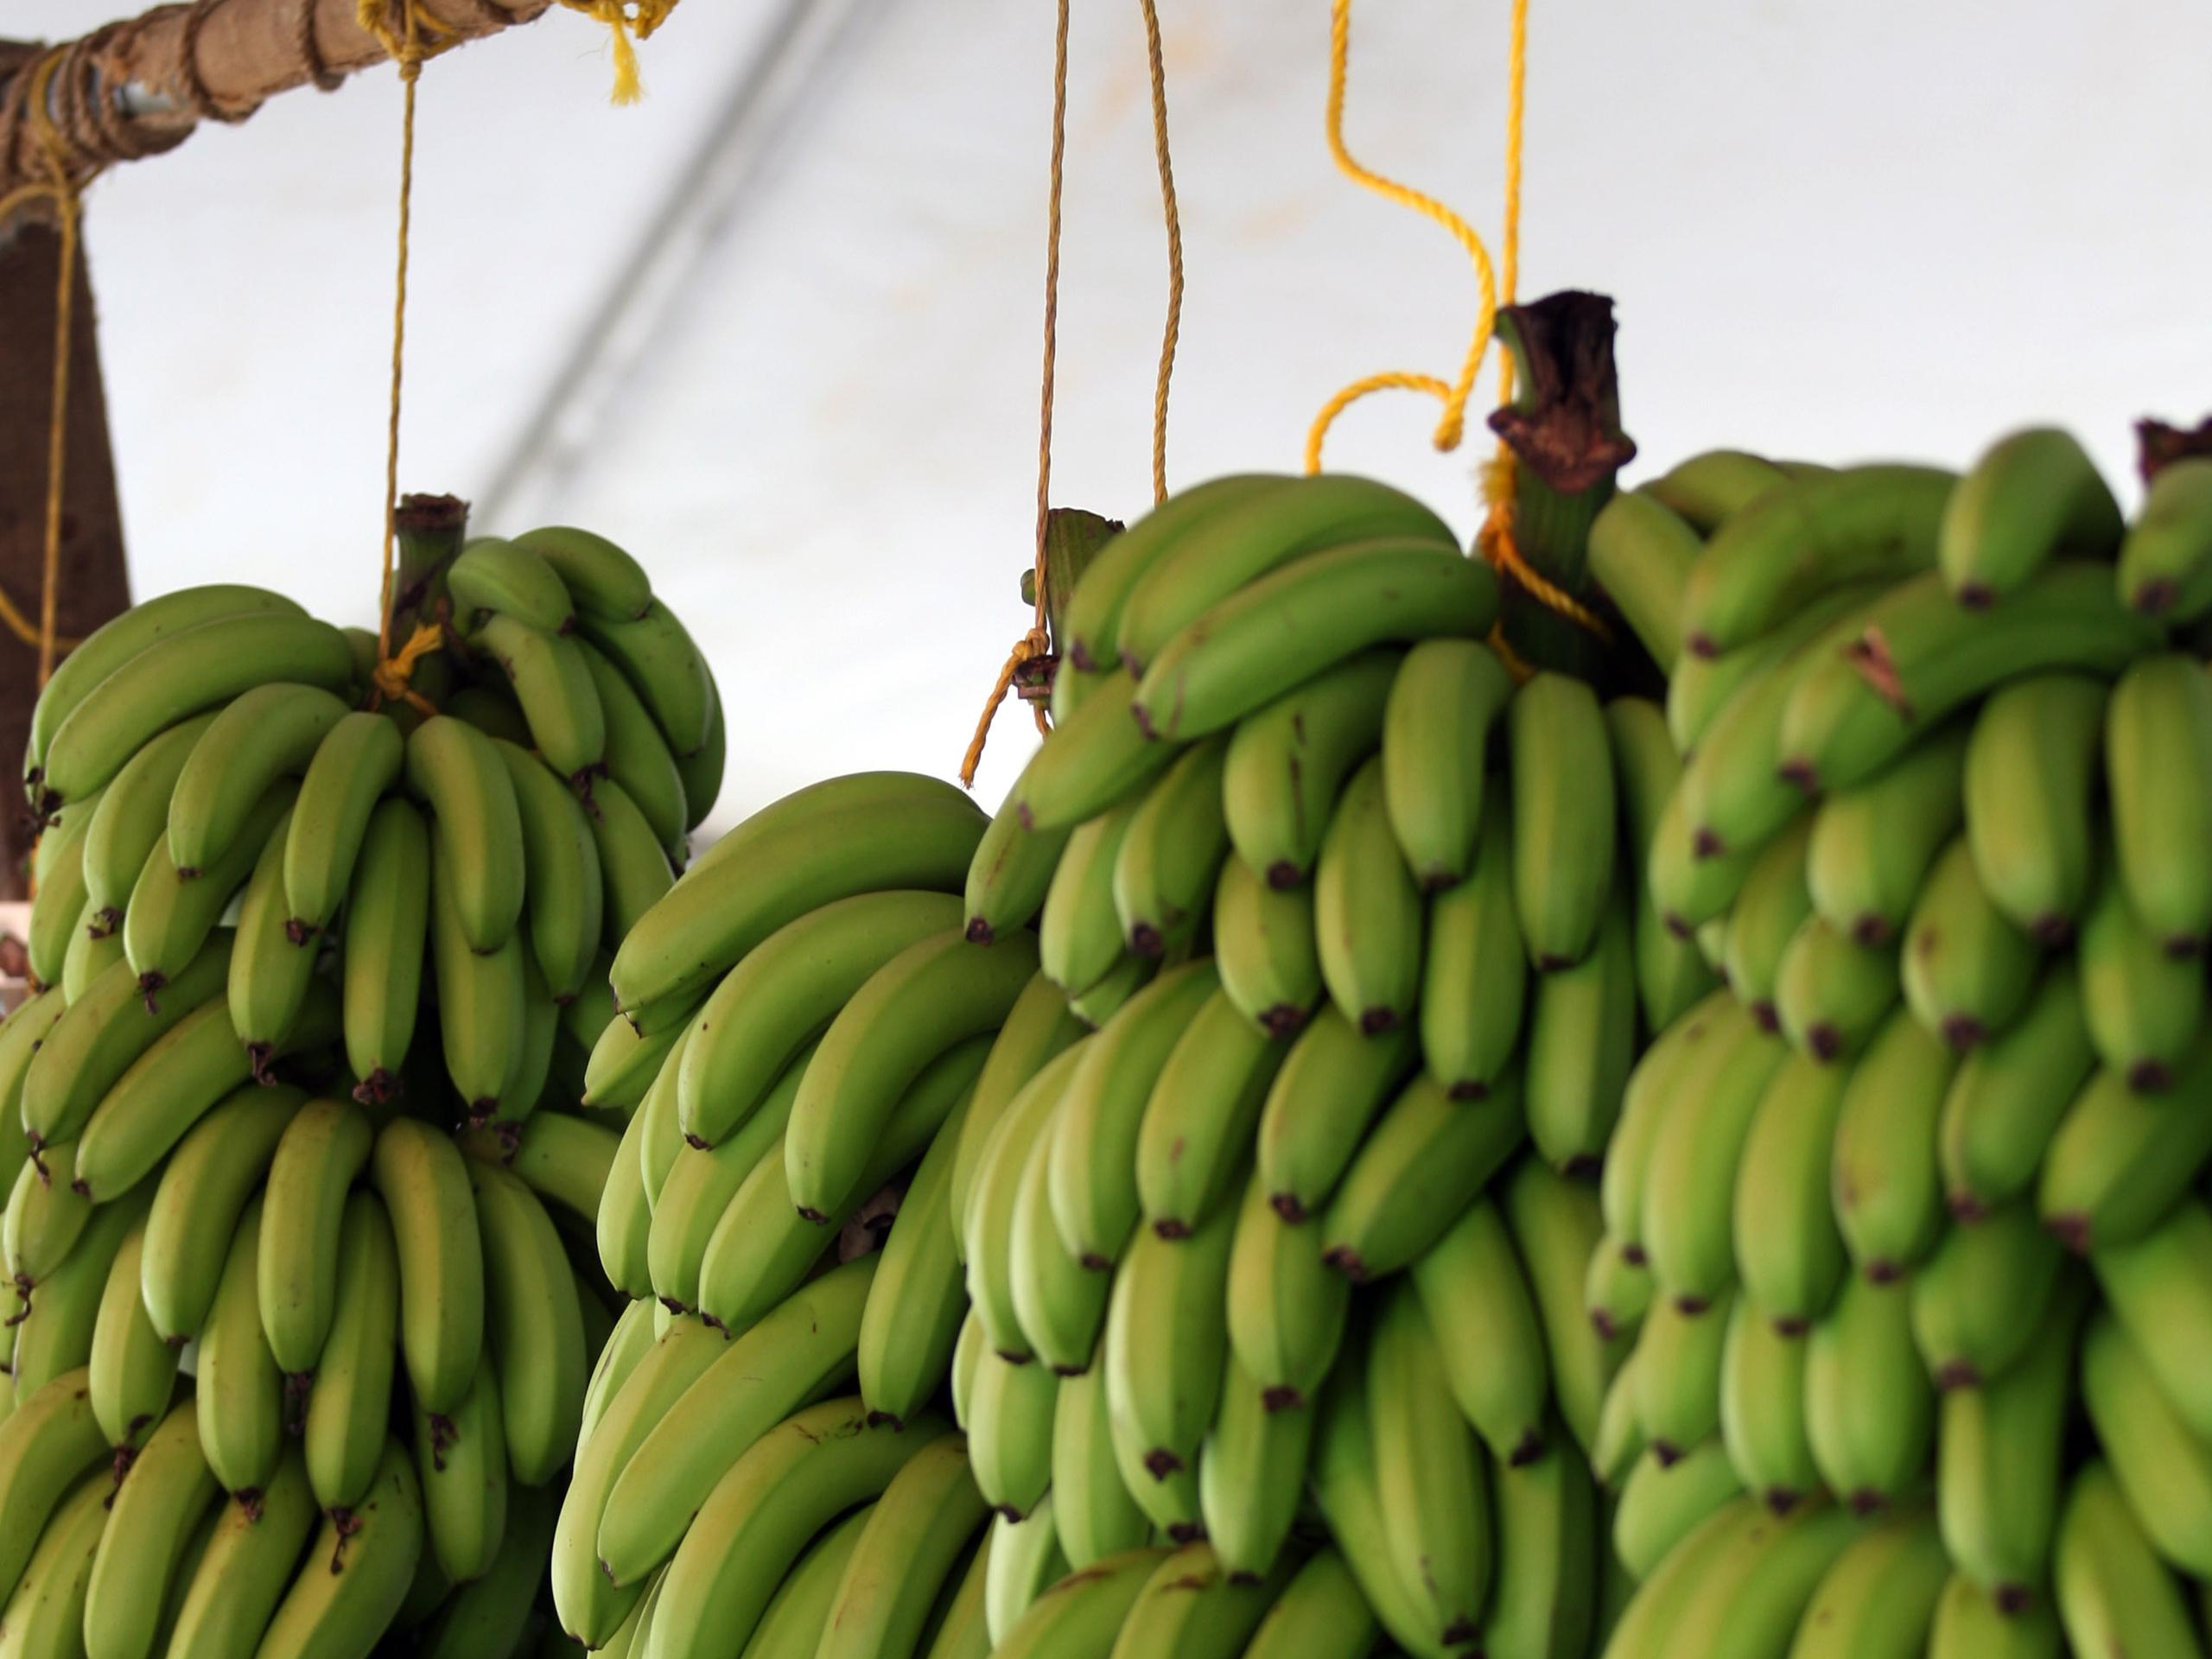 La importación de guineos desde Costa Rica surgió tras la devastación ocasionada por el huracán Fiona, el pasado 18 de septiembre, que dejó en el piso el 90 por ciento de las cosechas, incluyendo los plátanos.